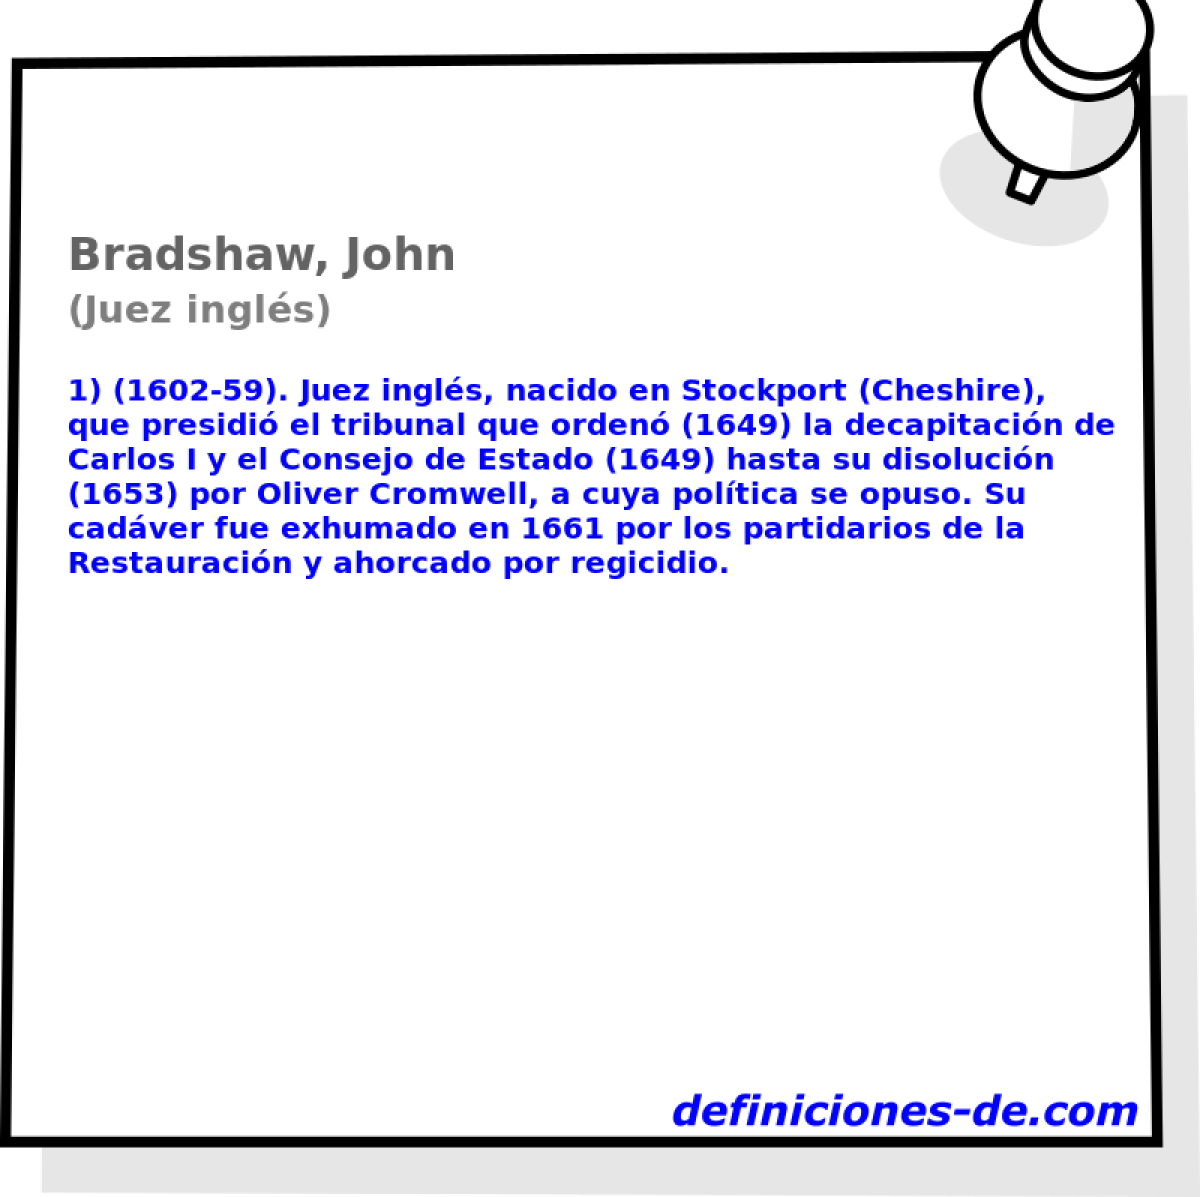 Bradshaw, John (Juez ingls)